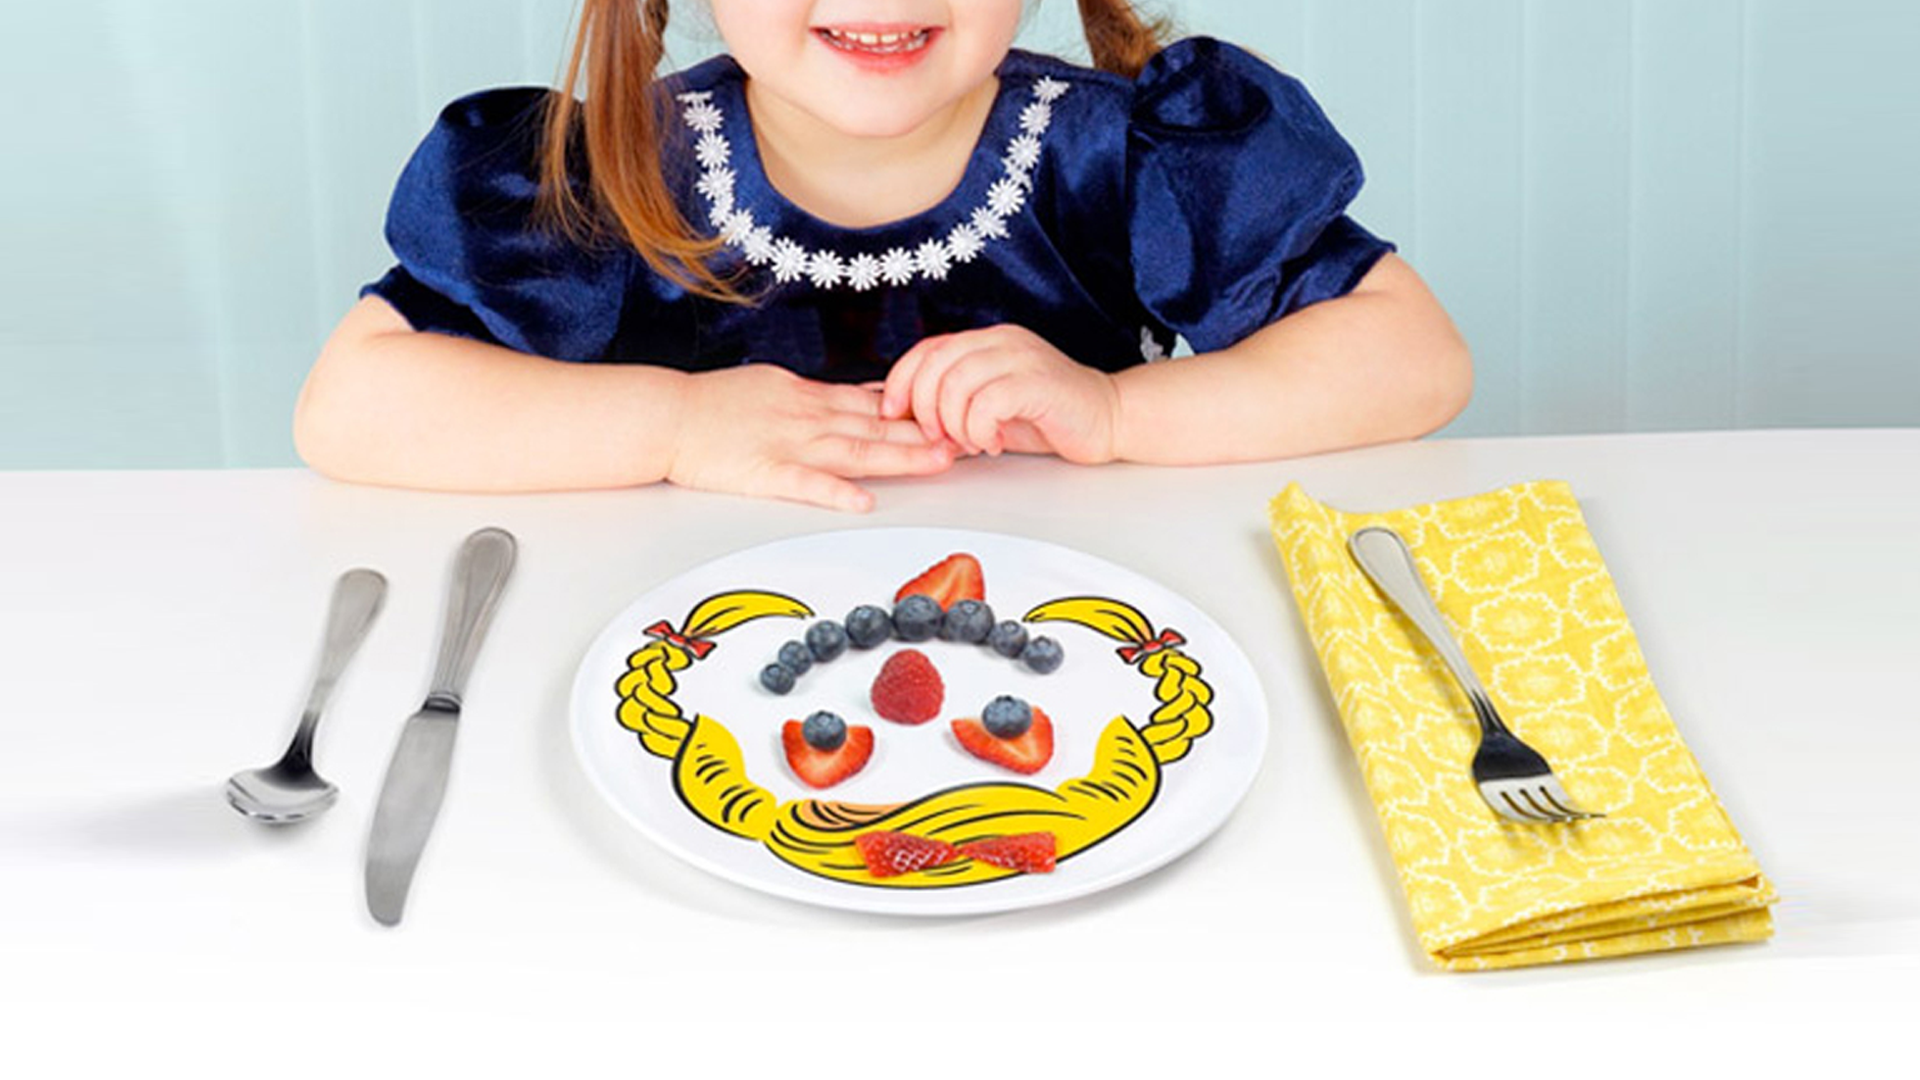 Instagram Worthy Tableware For Kids